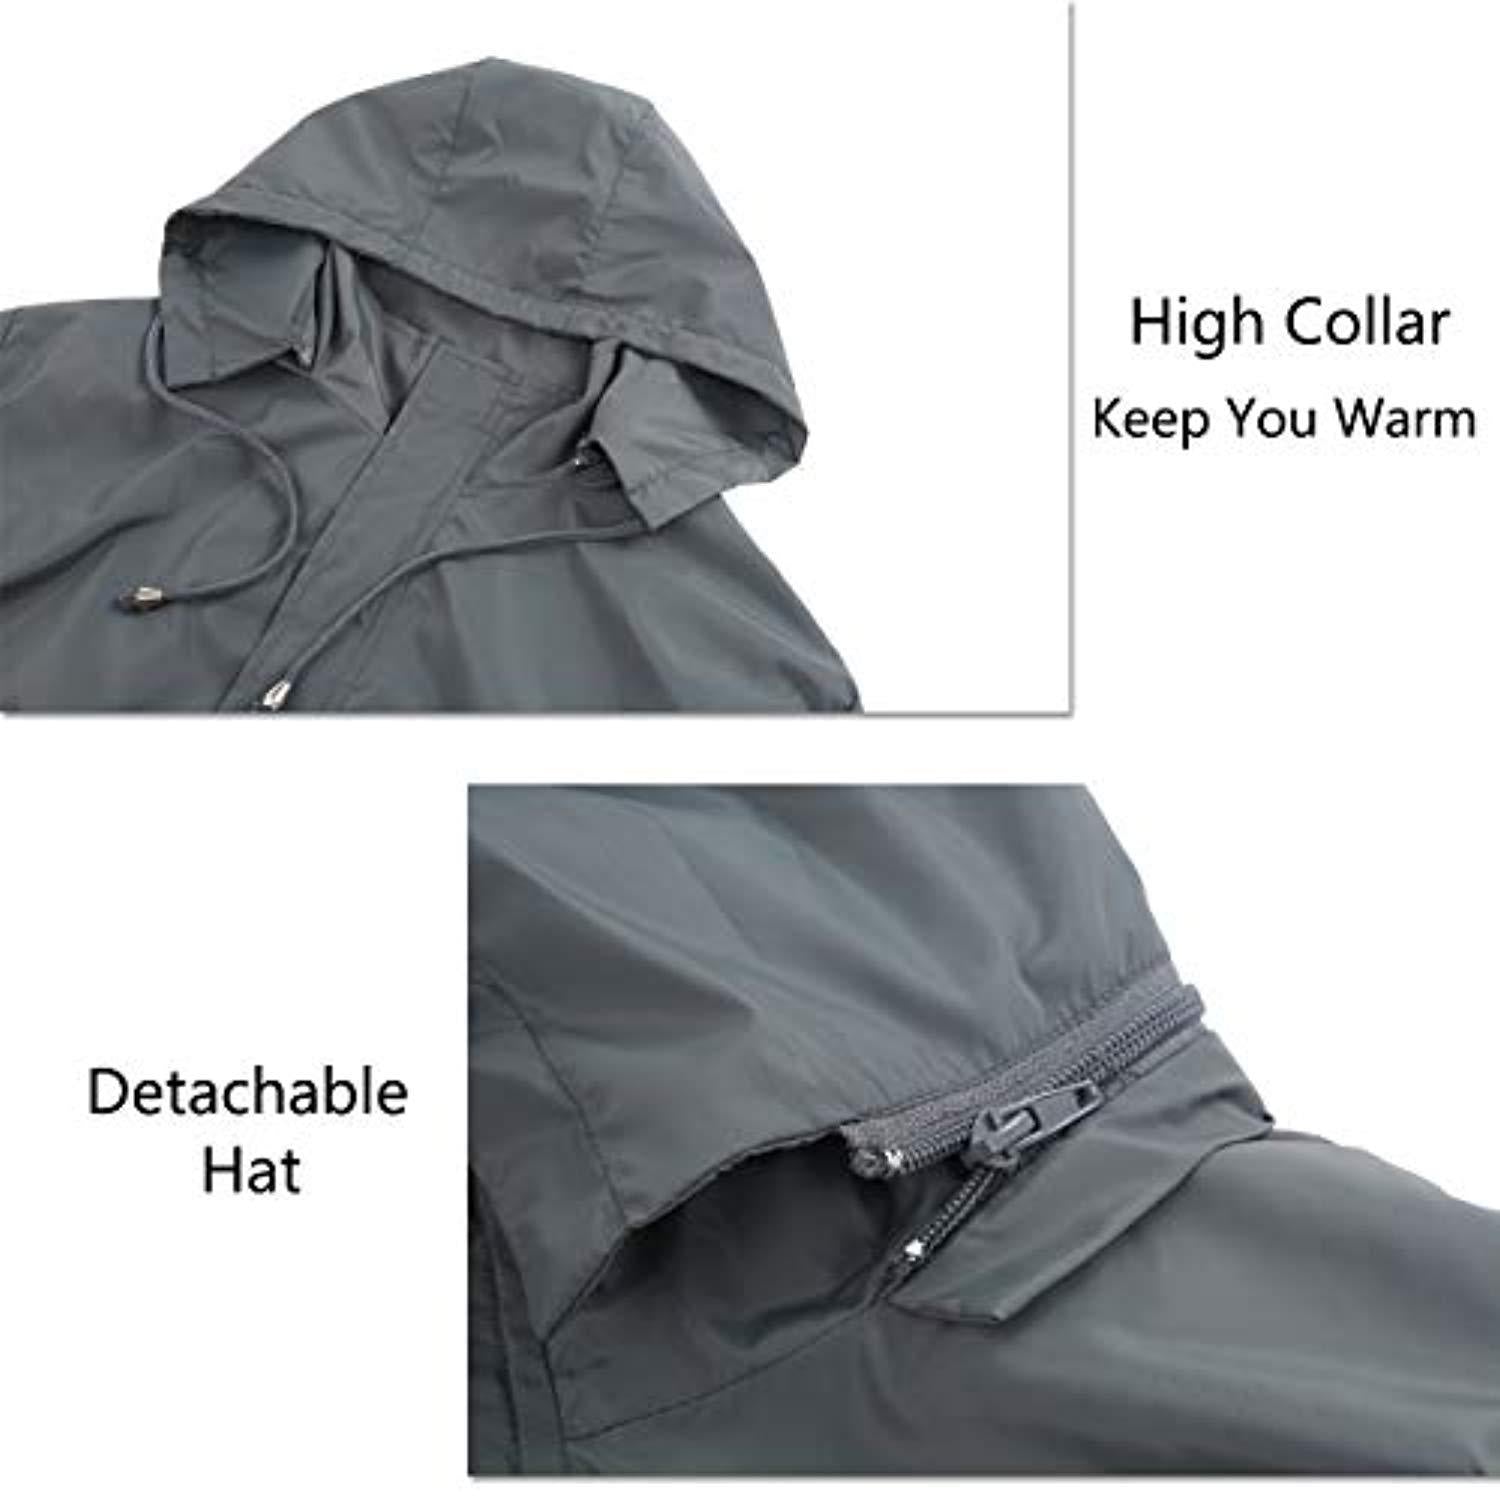 fisoul outdoor hooded rain jacket